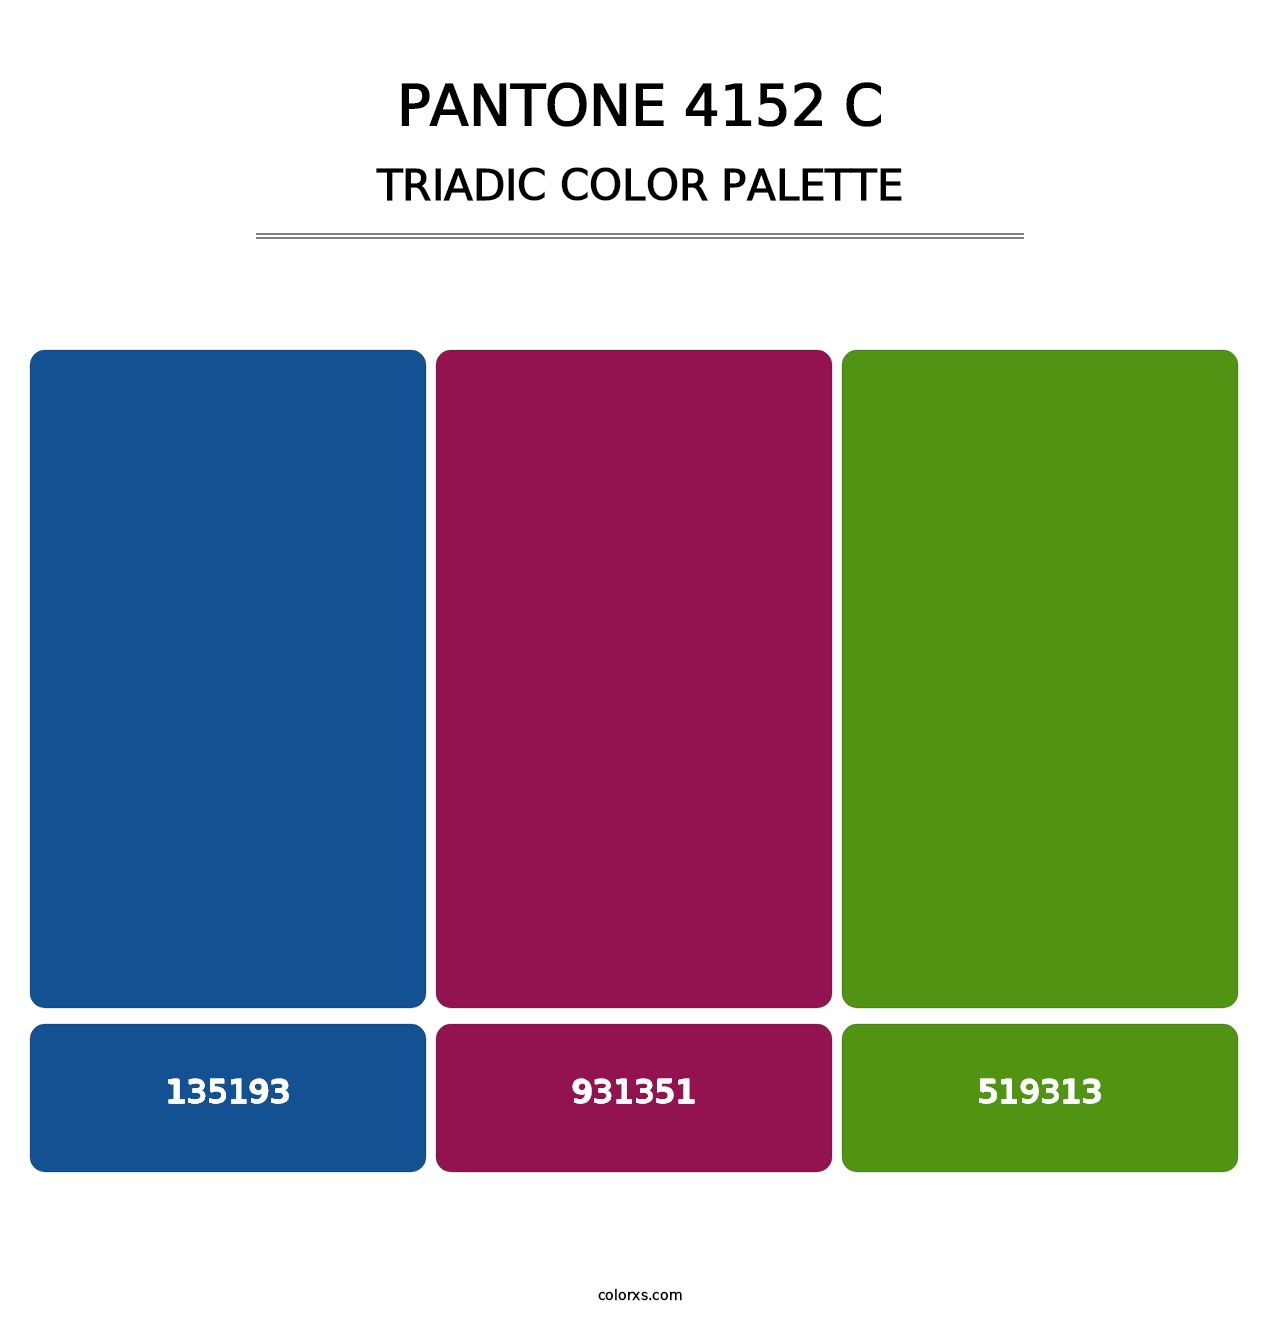 PANTONE 4152 C - Triadic Color Palette